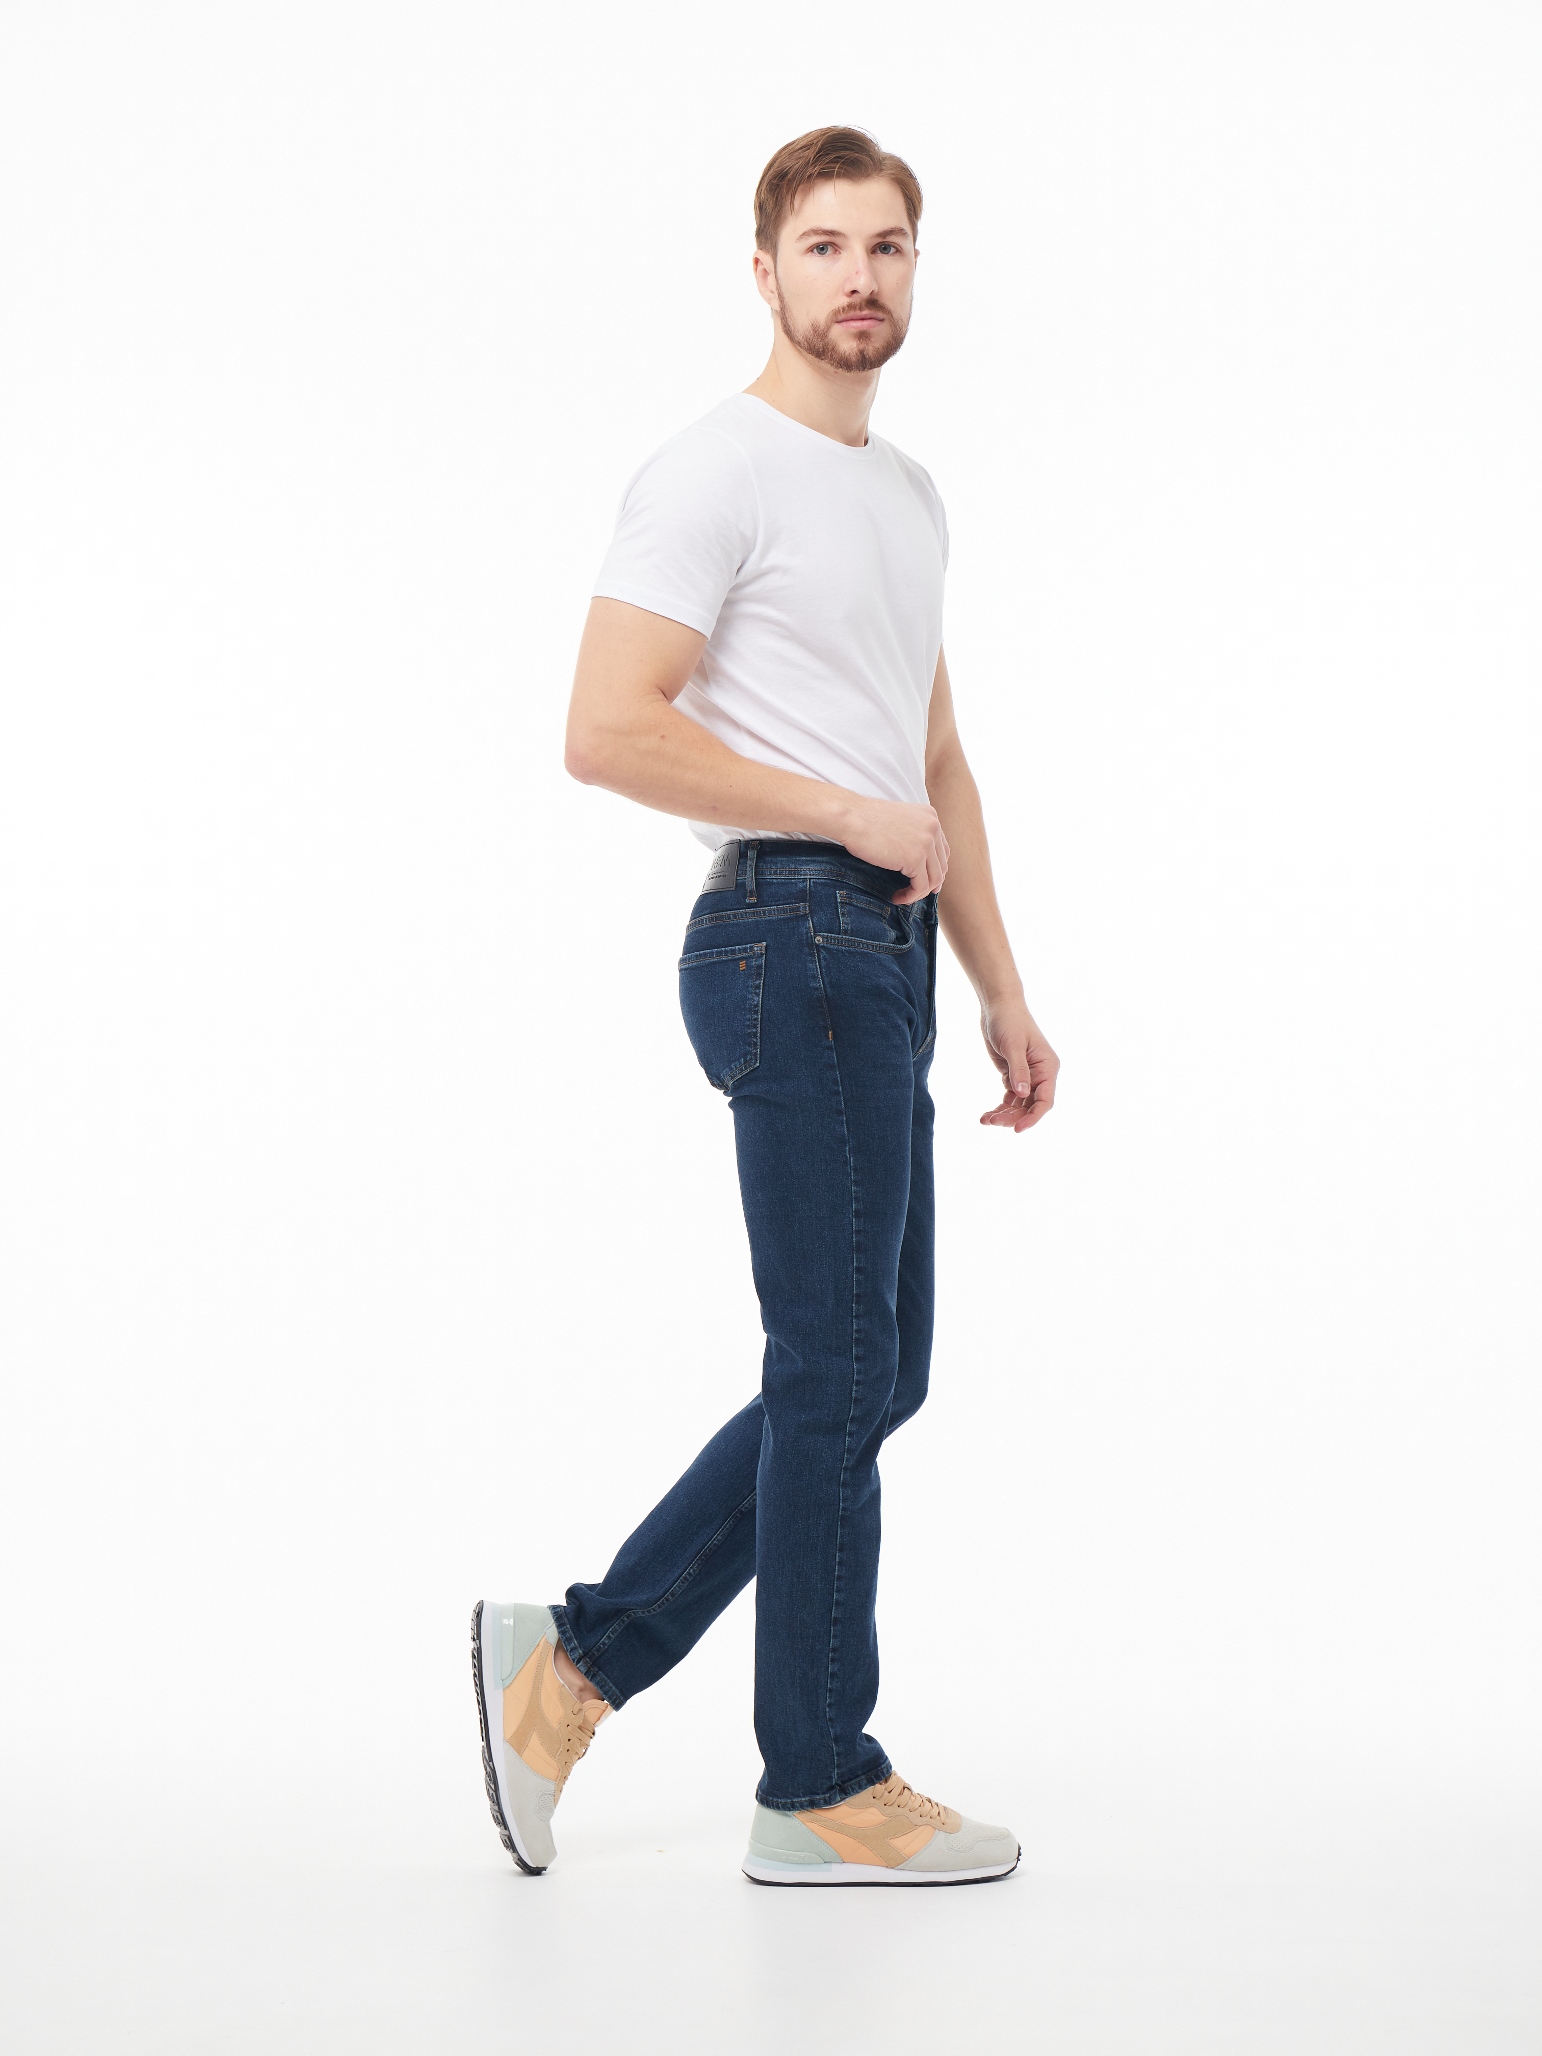 Чоловічі джинси Tapered OSCAR 1100 | Men's jeans Tapered OSCAR 1100